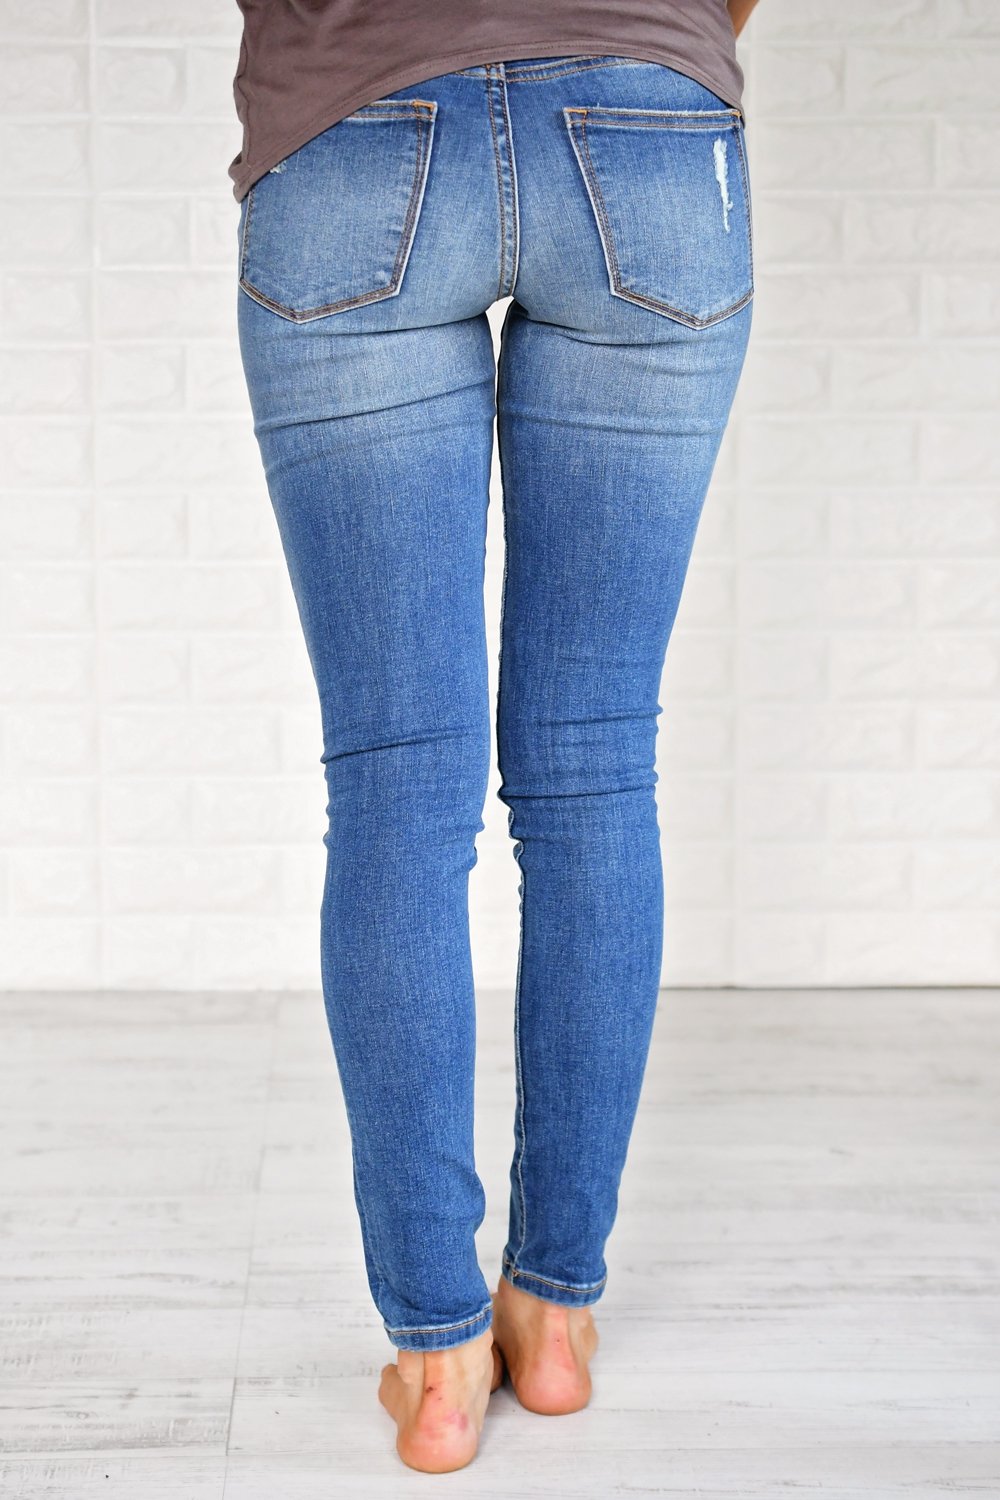 sneak peek trouser jeans